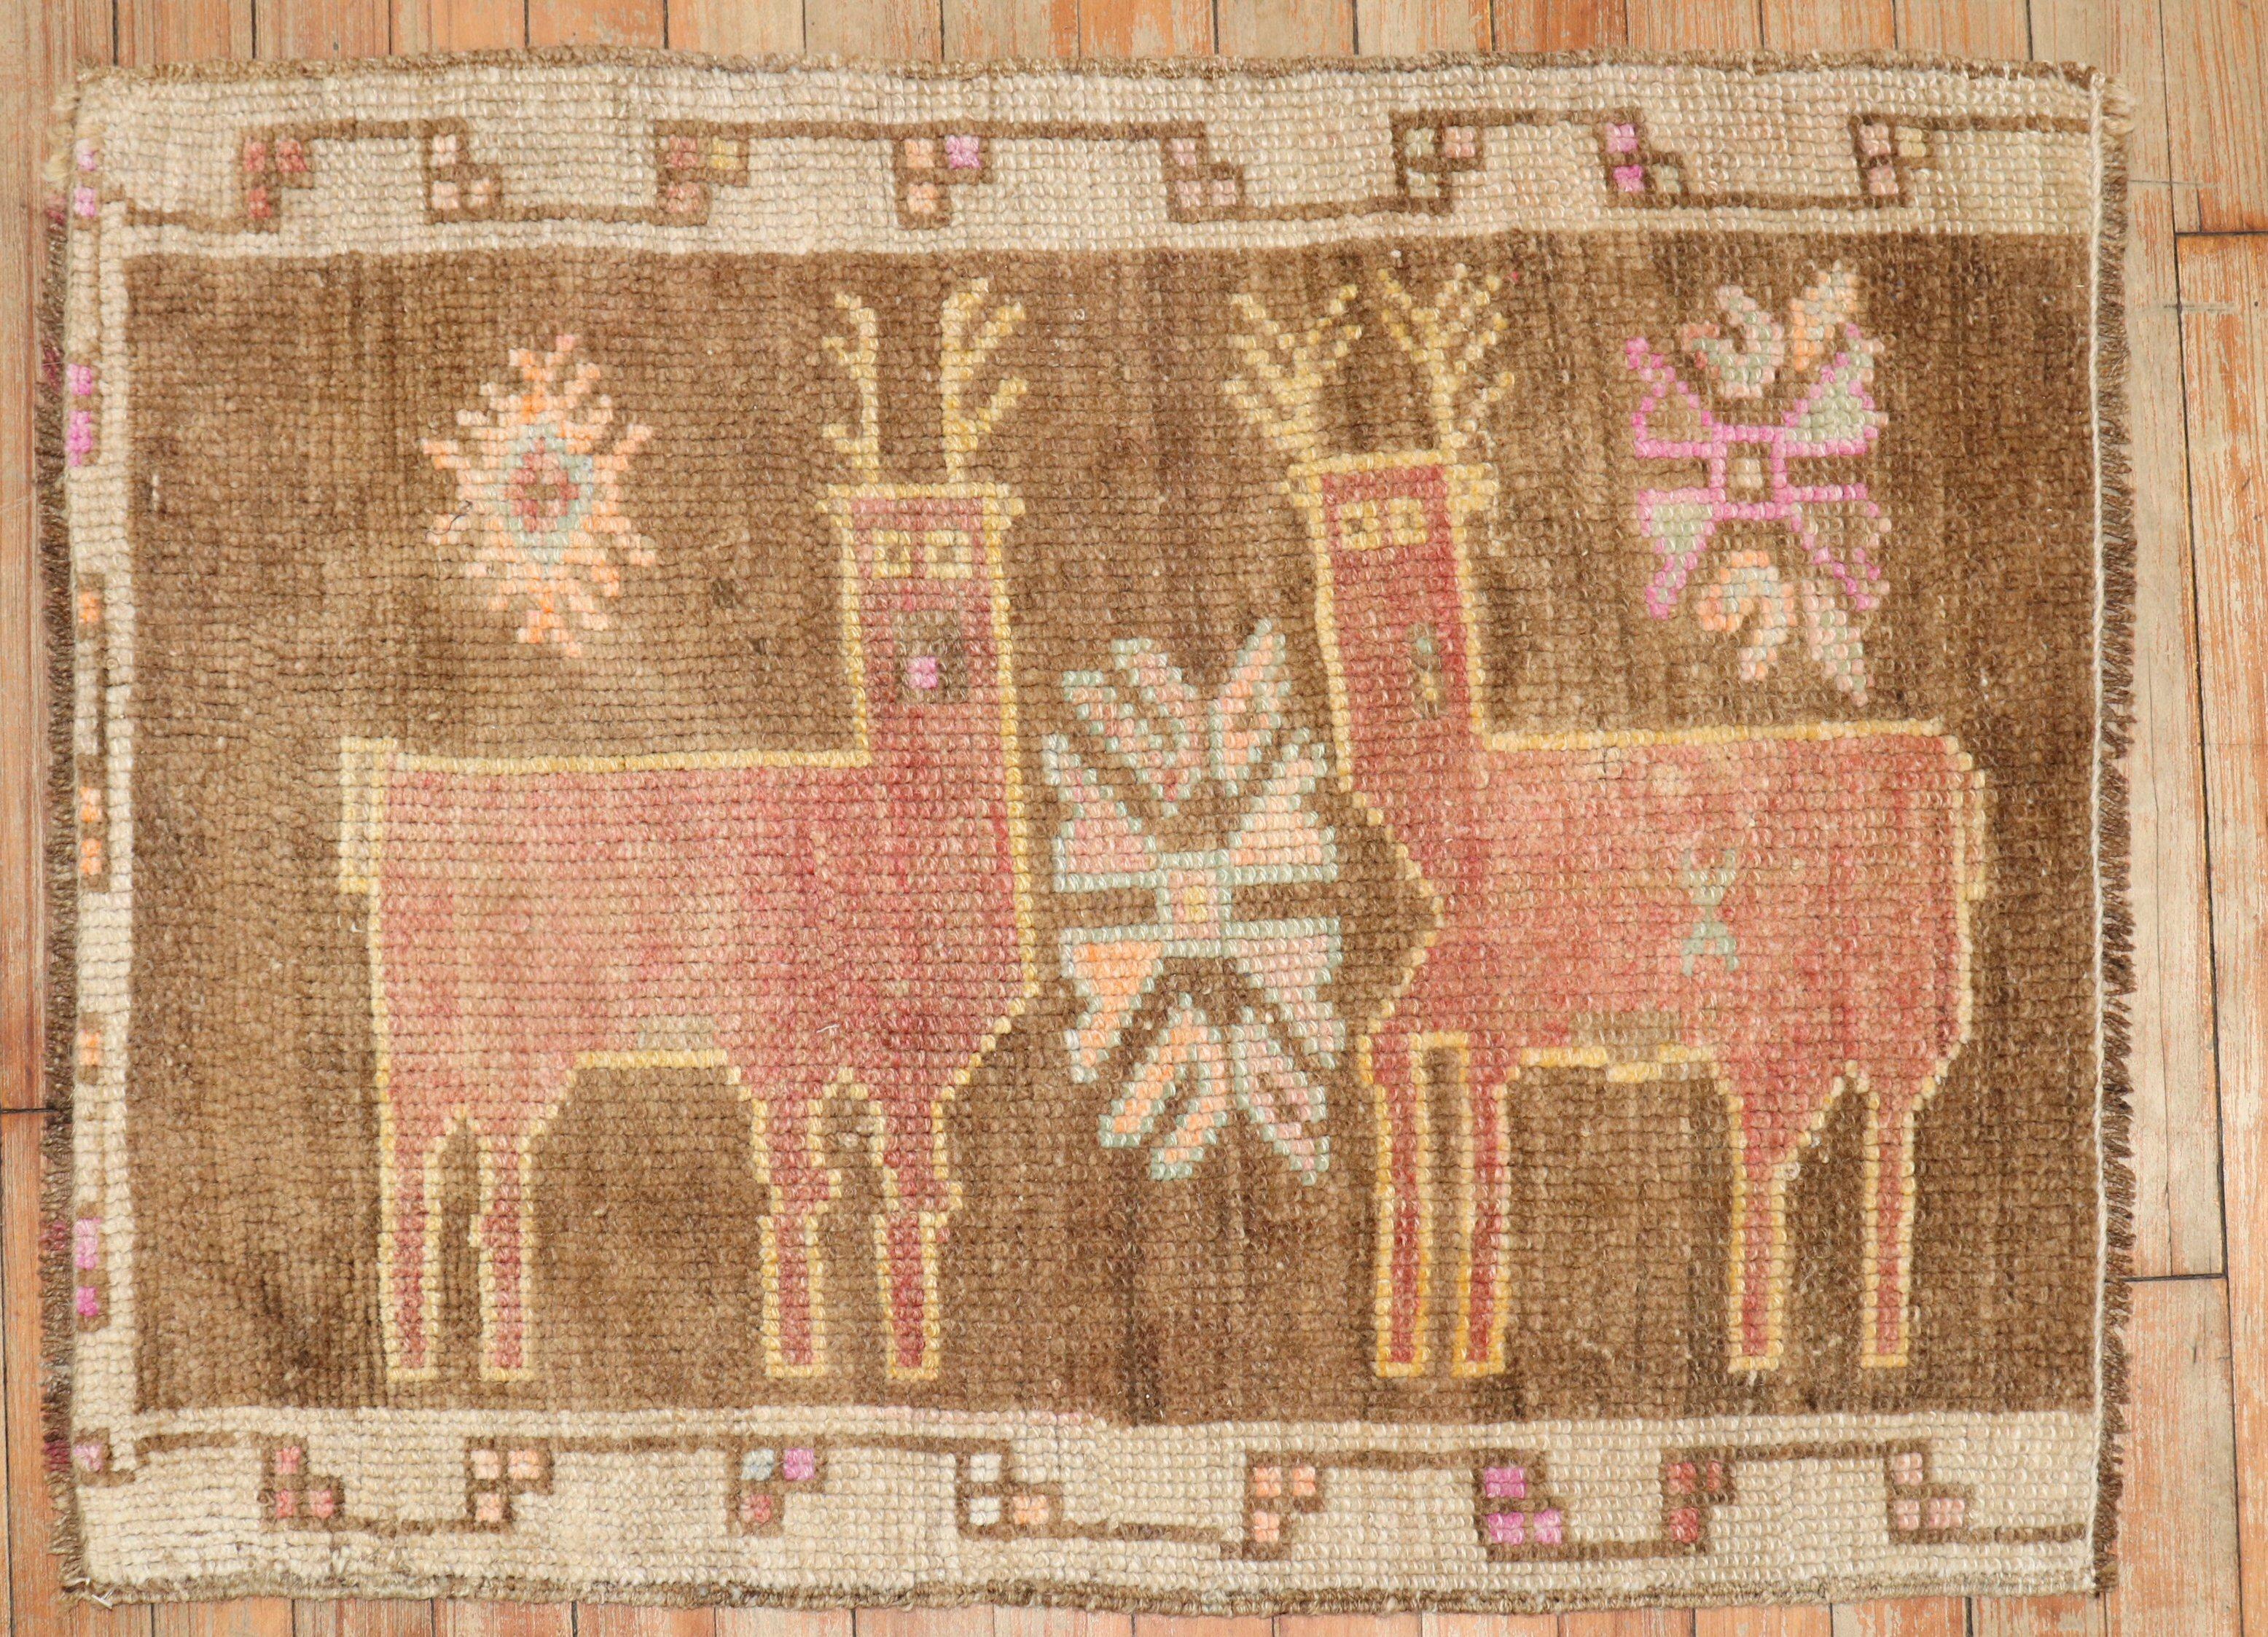 Mid-20th Century turkish rug depicting 2 deers on a brown field

Measures: 2'1